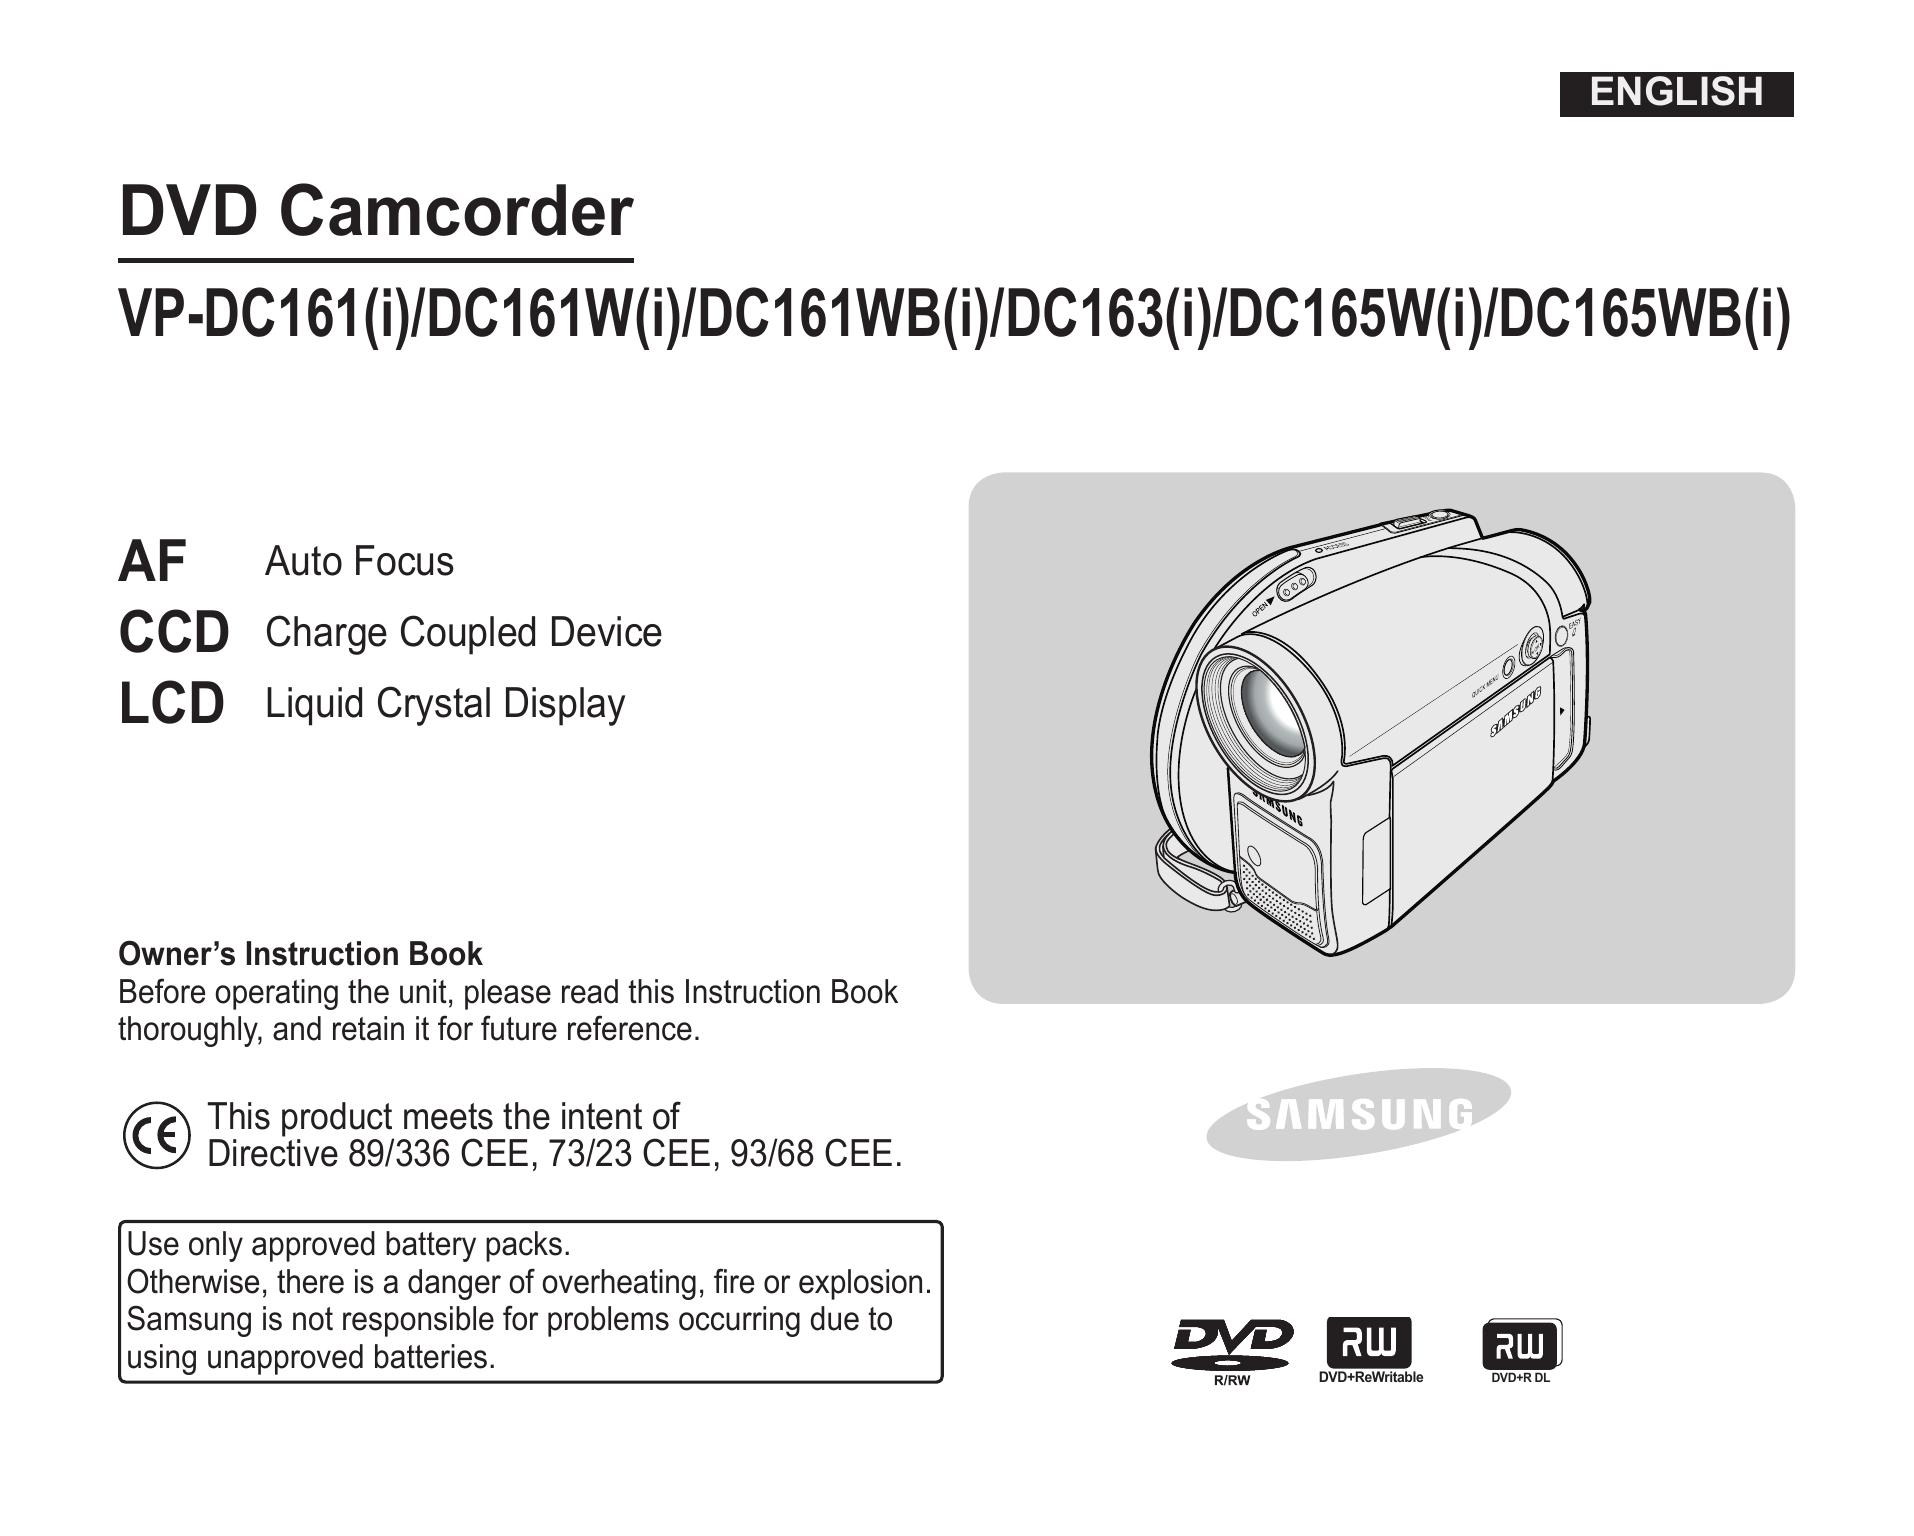 Samsung DC163(i) Camcorder User Manual